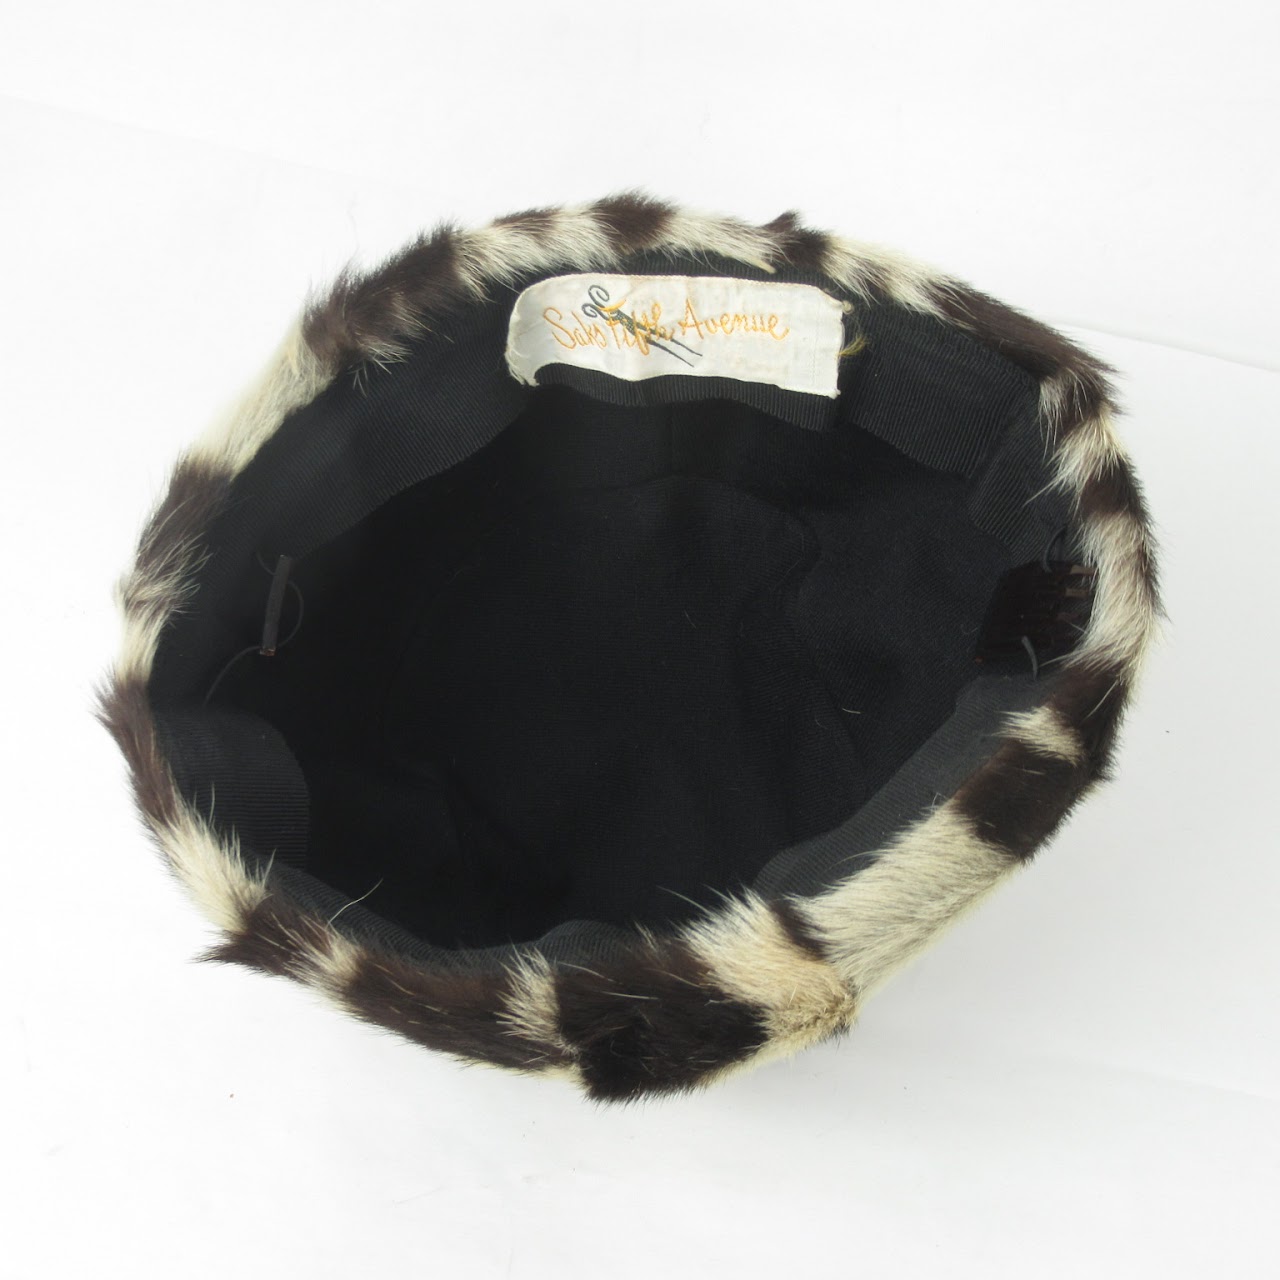 Saks Fifth Avenue Vintage Fur Pillbox Hat